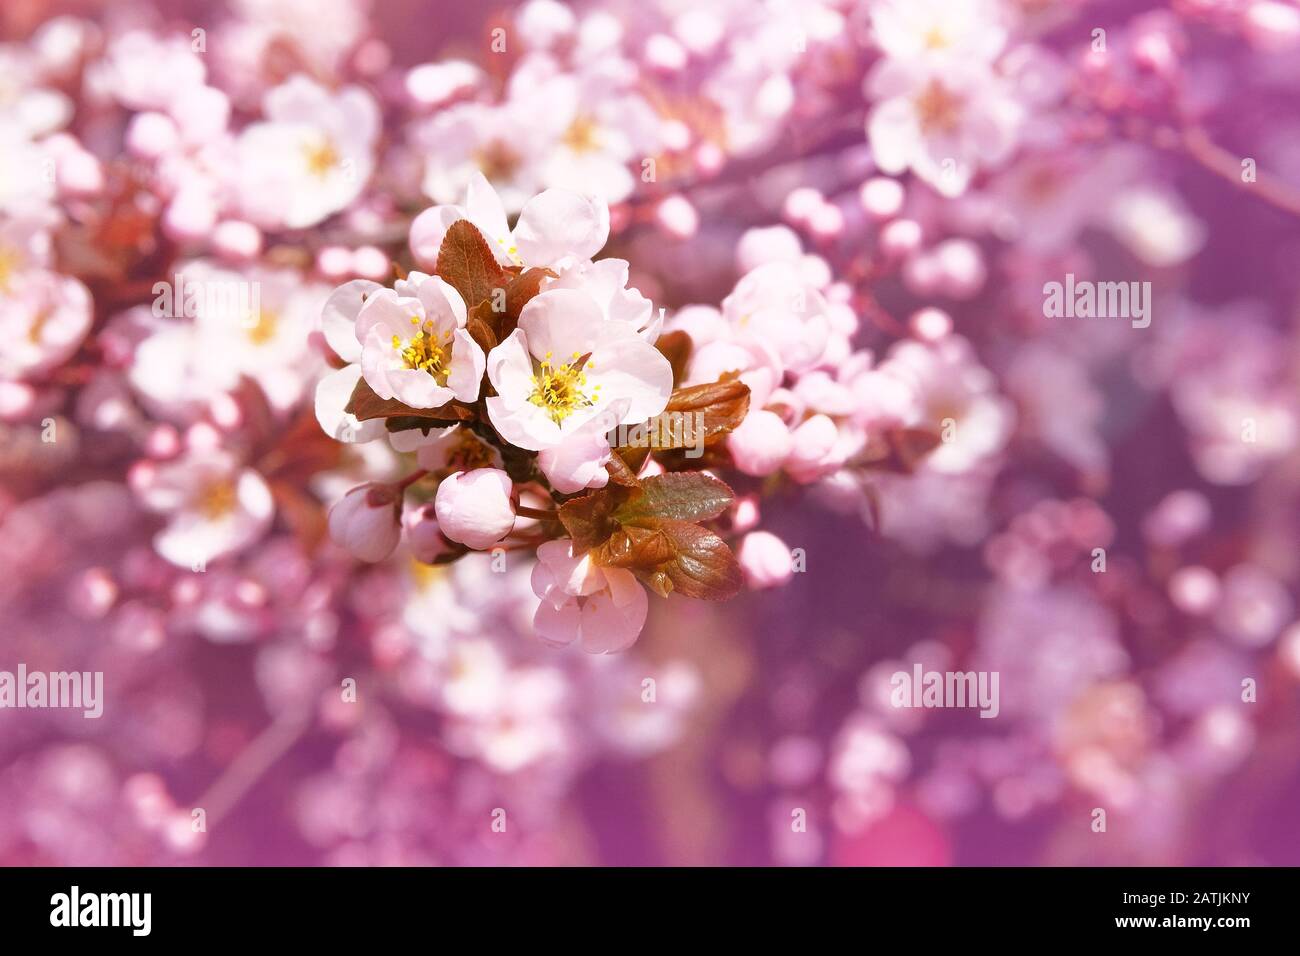 Aprikosenblumen blühen mit weißen, hell duftenden Kronblättern. Grußkarte für den Tag der Frauen. Verwischter Naturhintergrund im Frühling, violette Farbe. Stockfoto